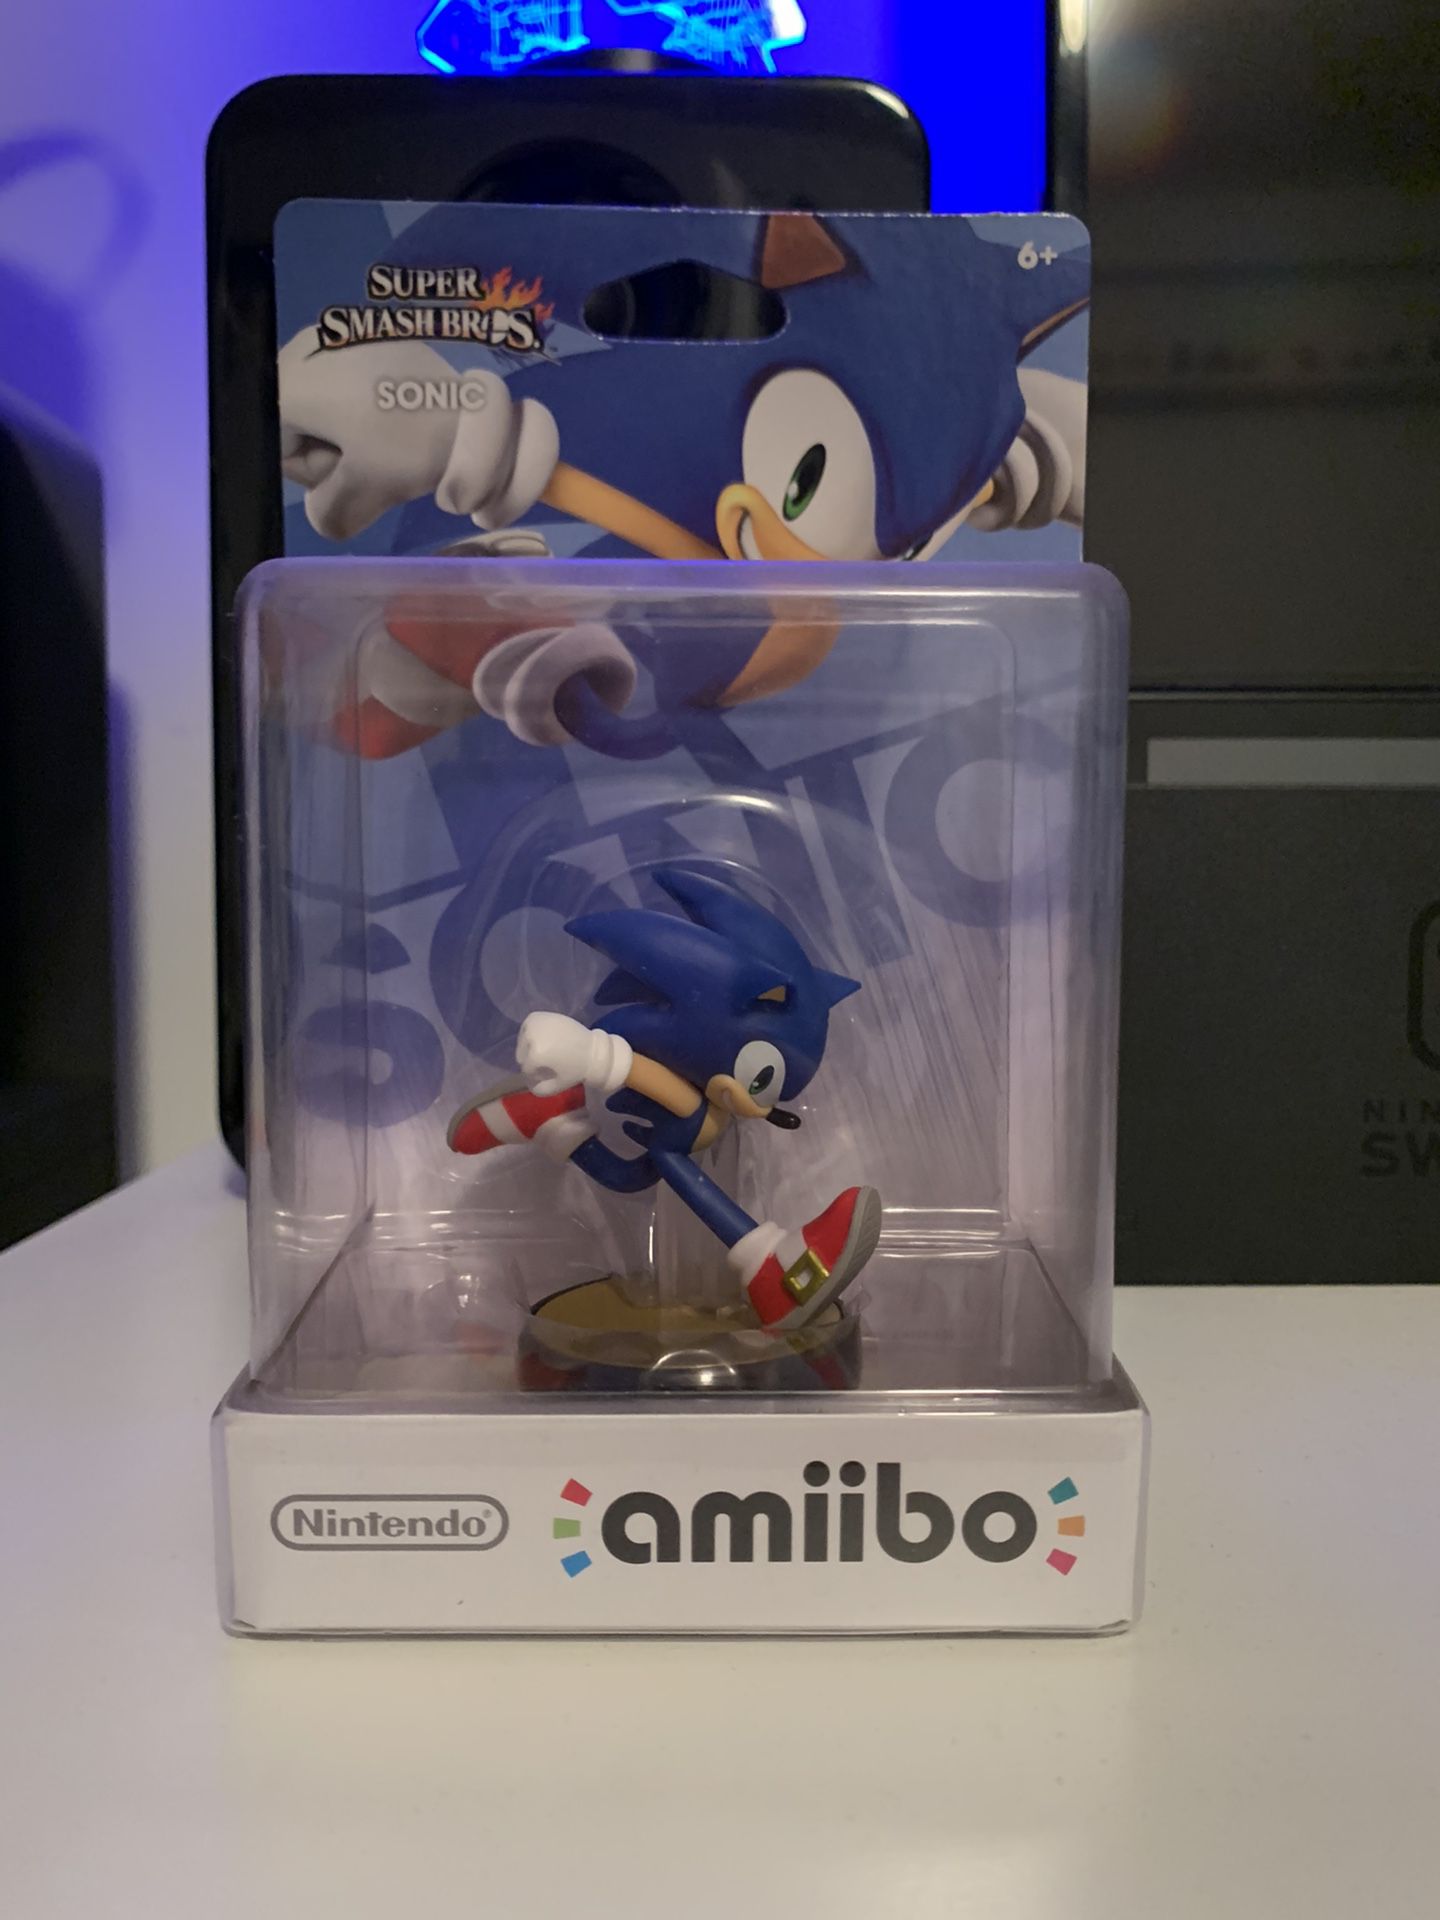 Sonic Super Smash Bro’s Amiibo